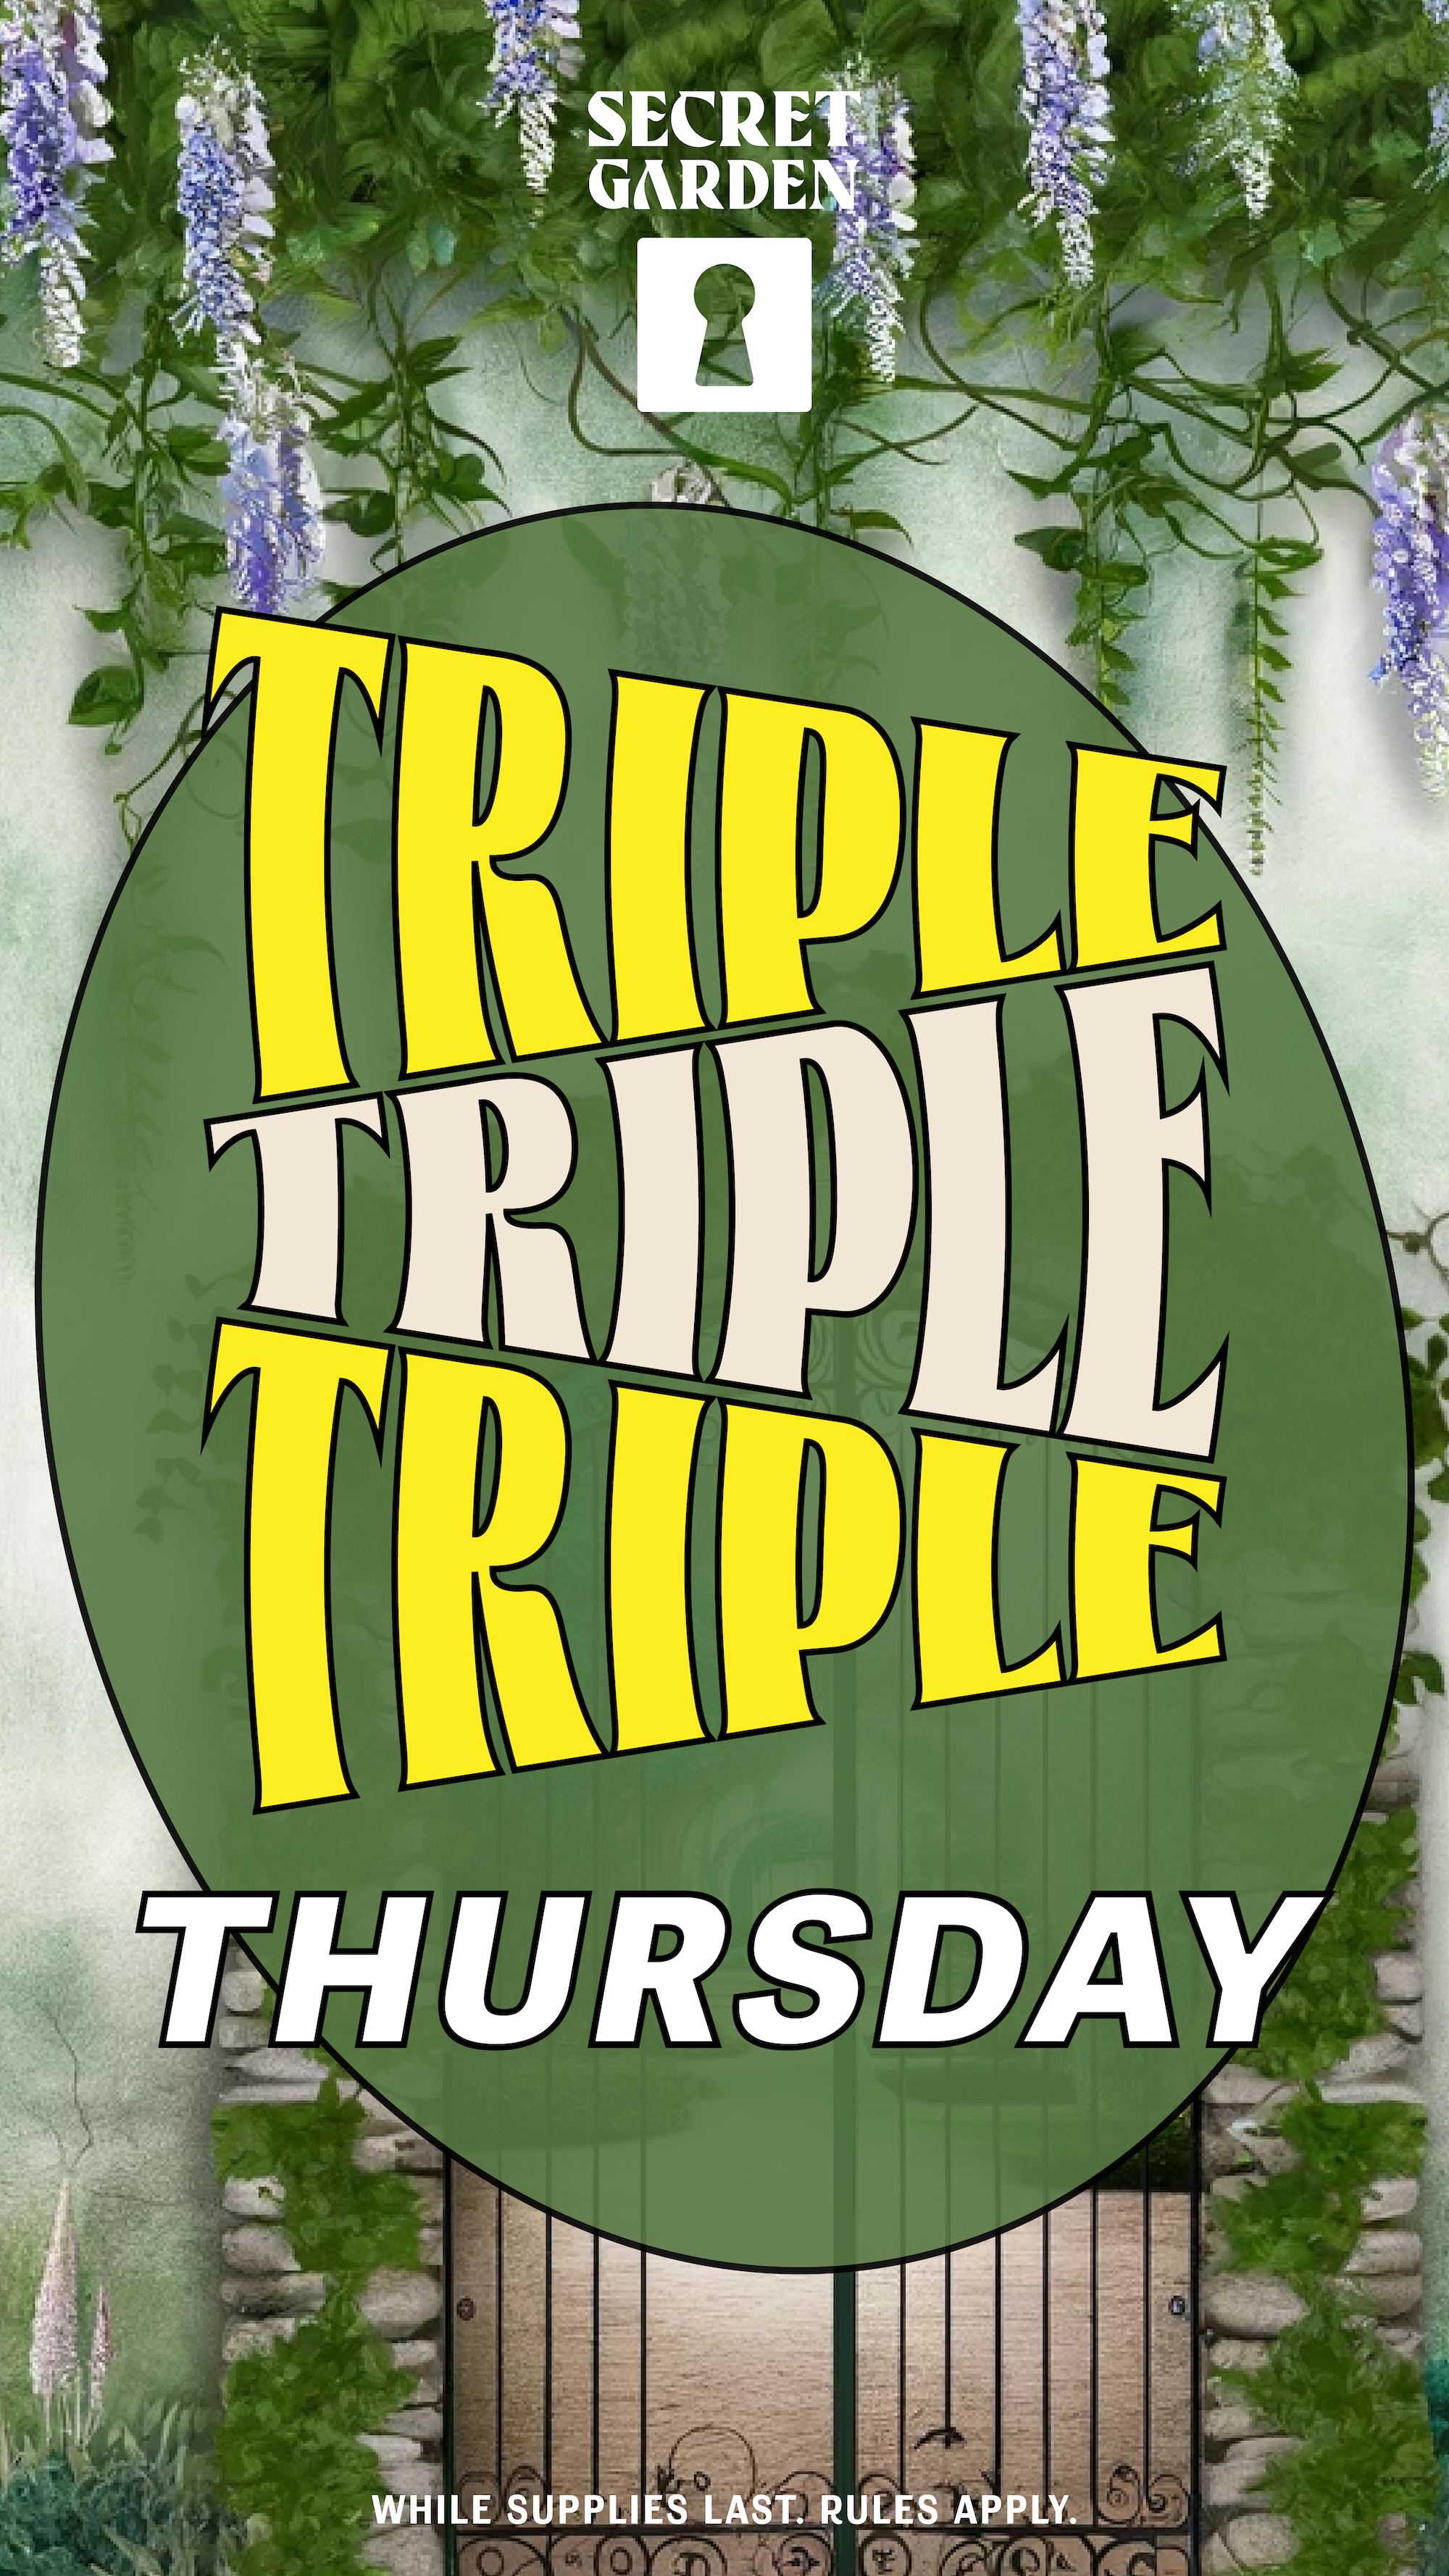 A flyer describing the Triple Thursday cannabis daily deal at Secret Garden Costa Mesa